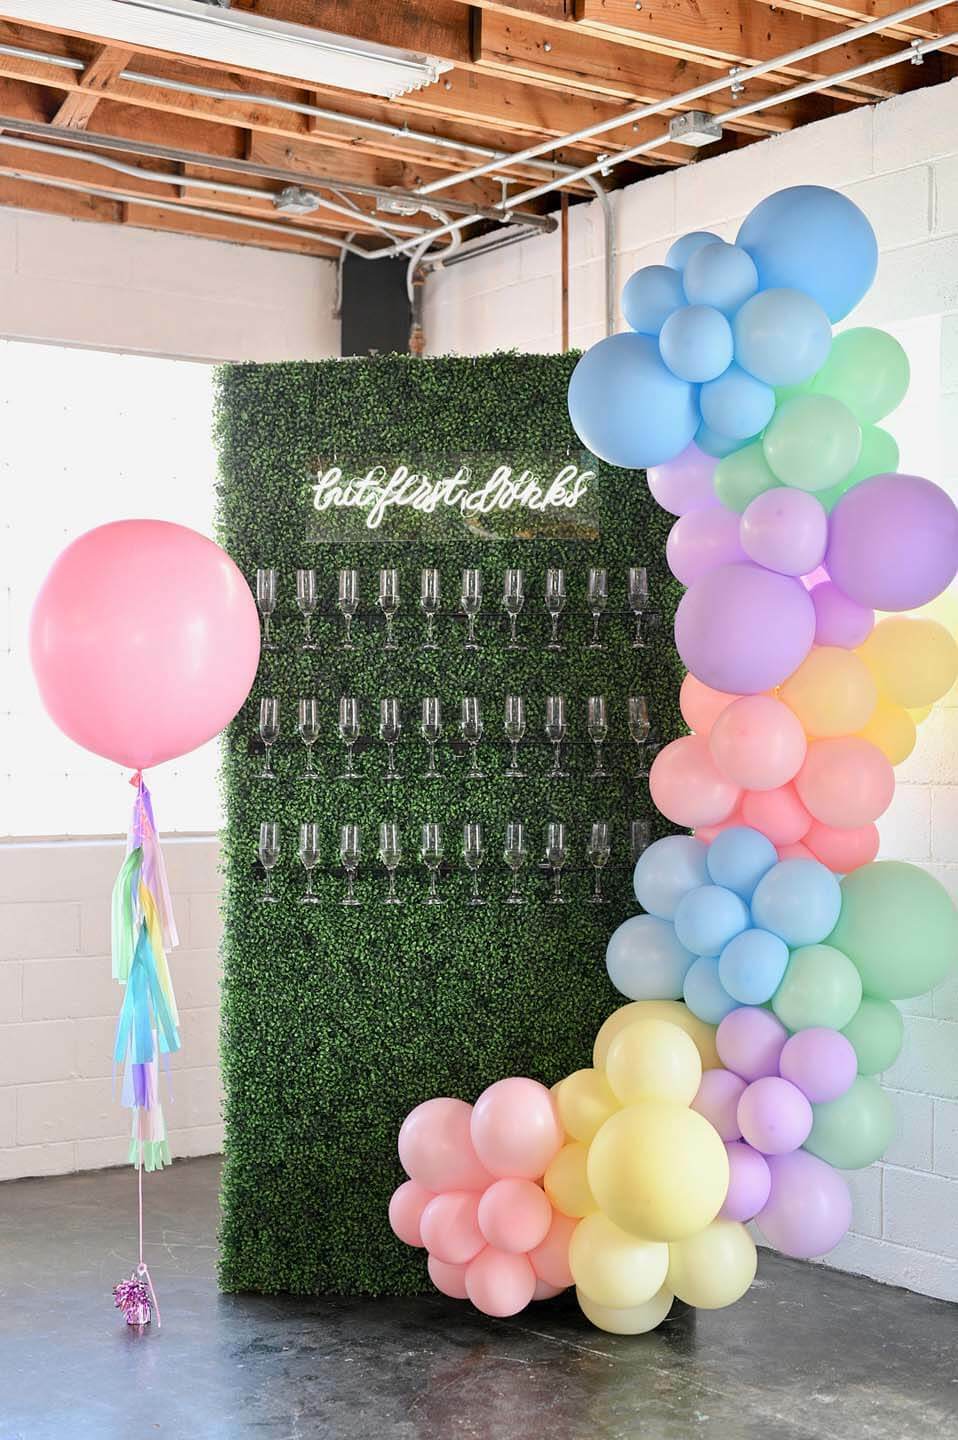 Пастельная радужная инсталляция с воздушным шаром украшает зеленую стену из шампанского